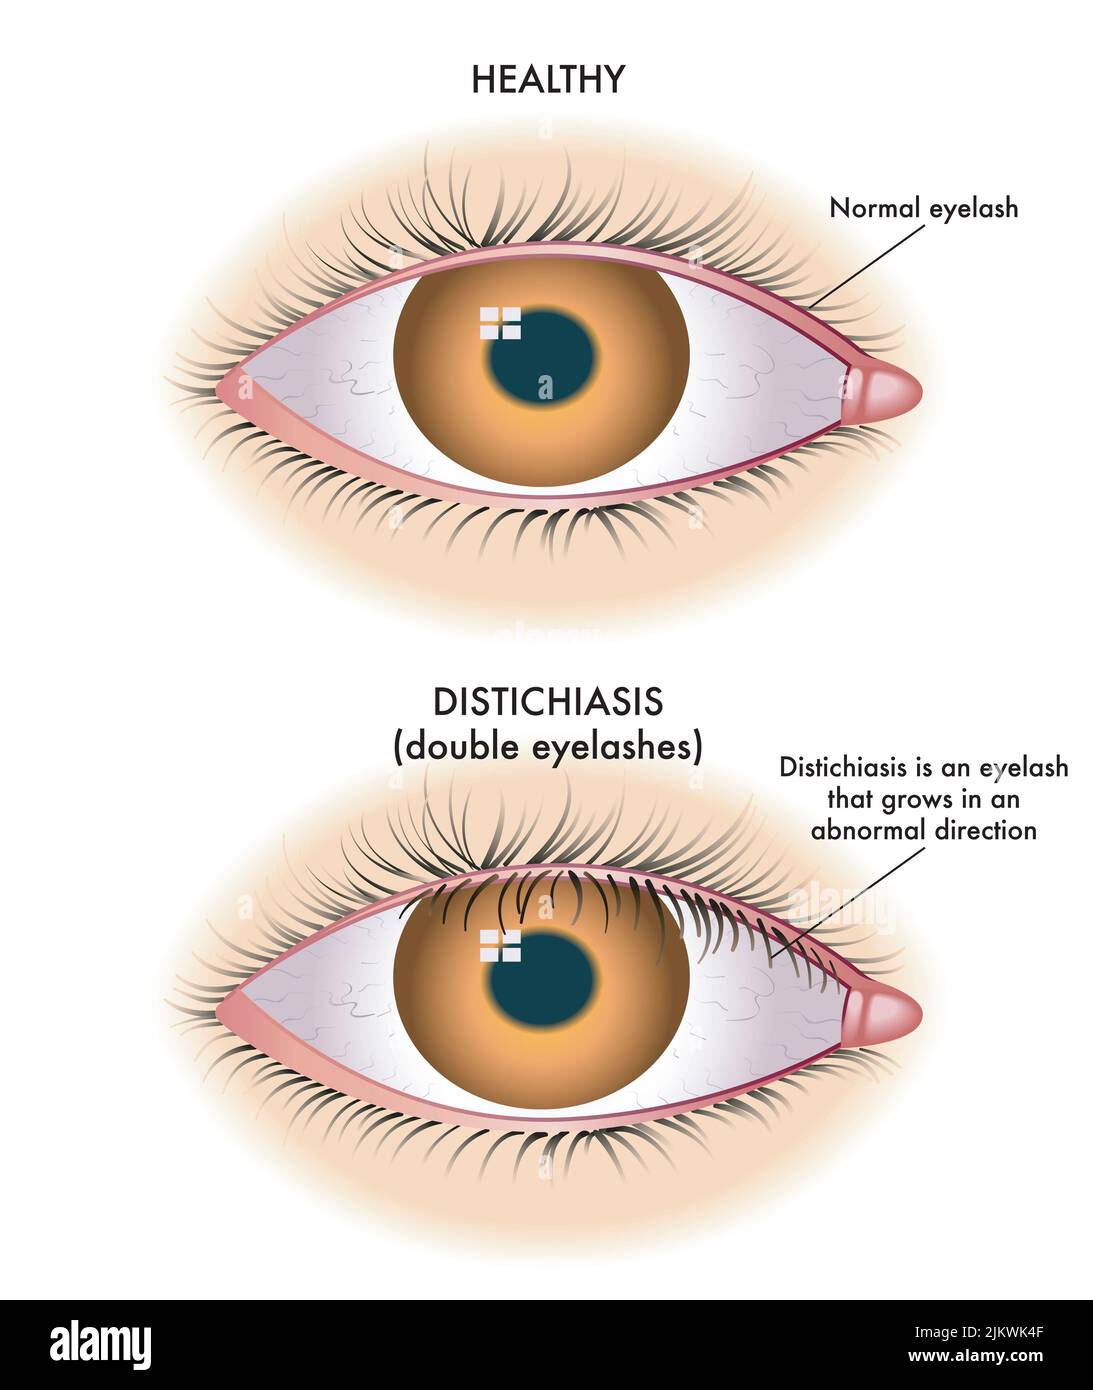 L'illustrazione medica mostra il confronto tra un occhio normale e uno affetto da distichiasi. Foto Stock